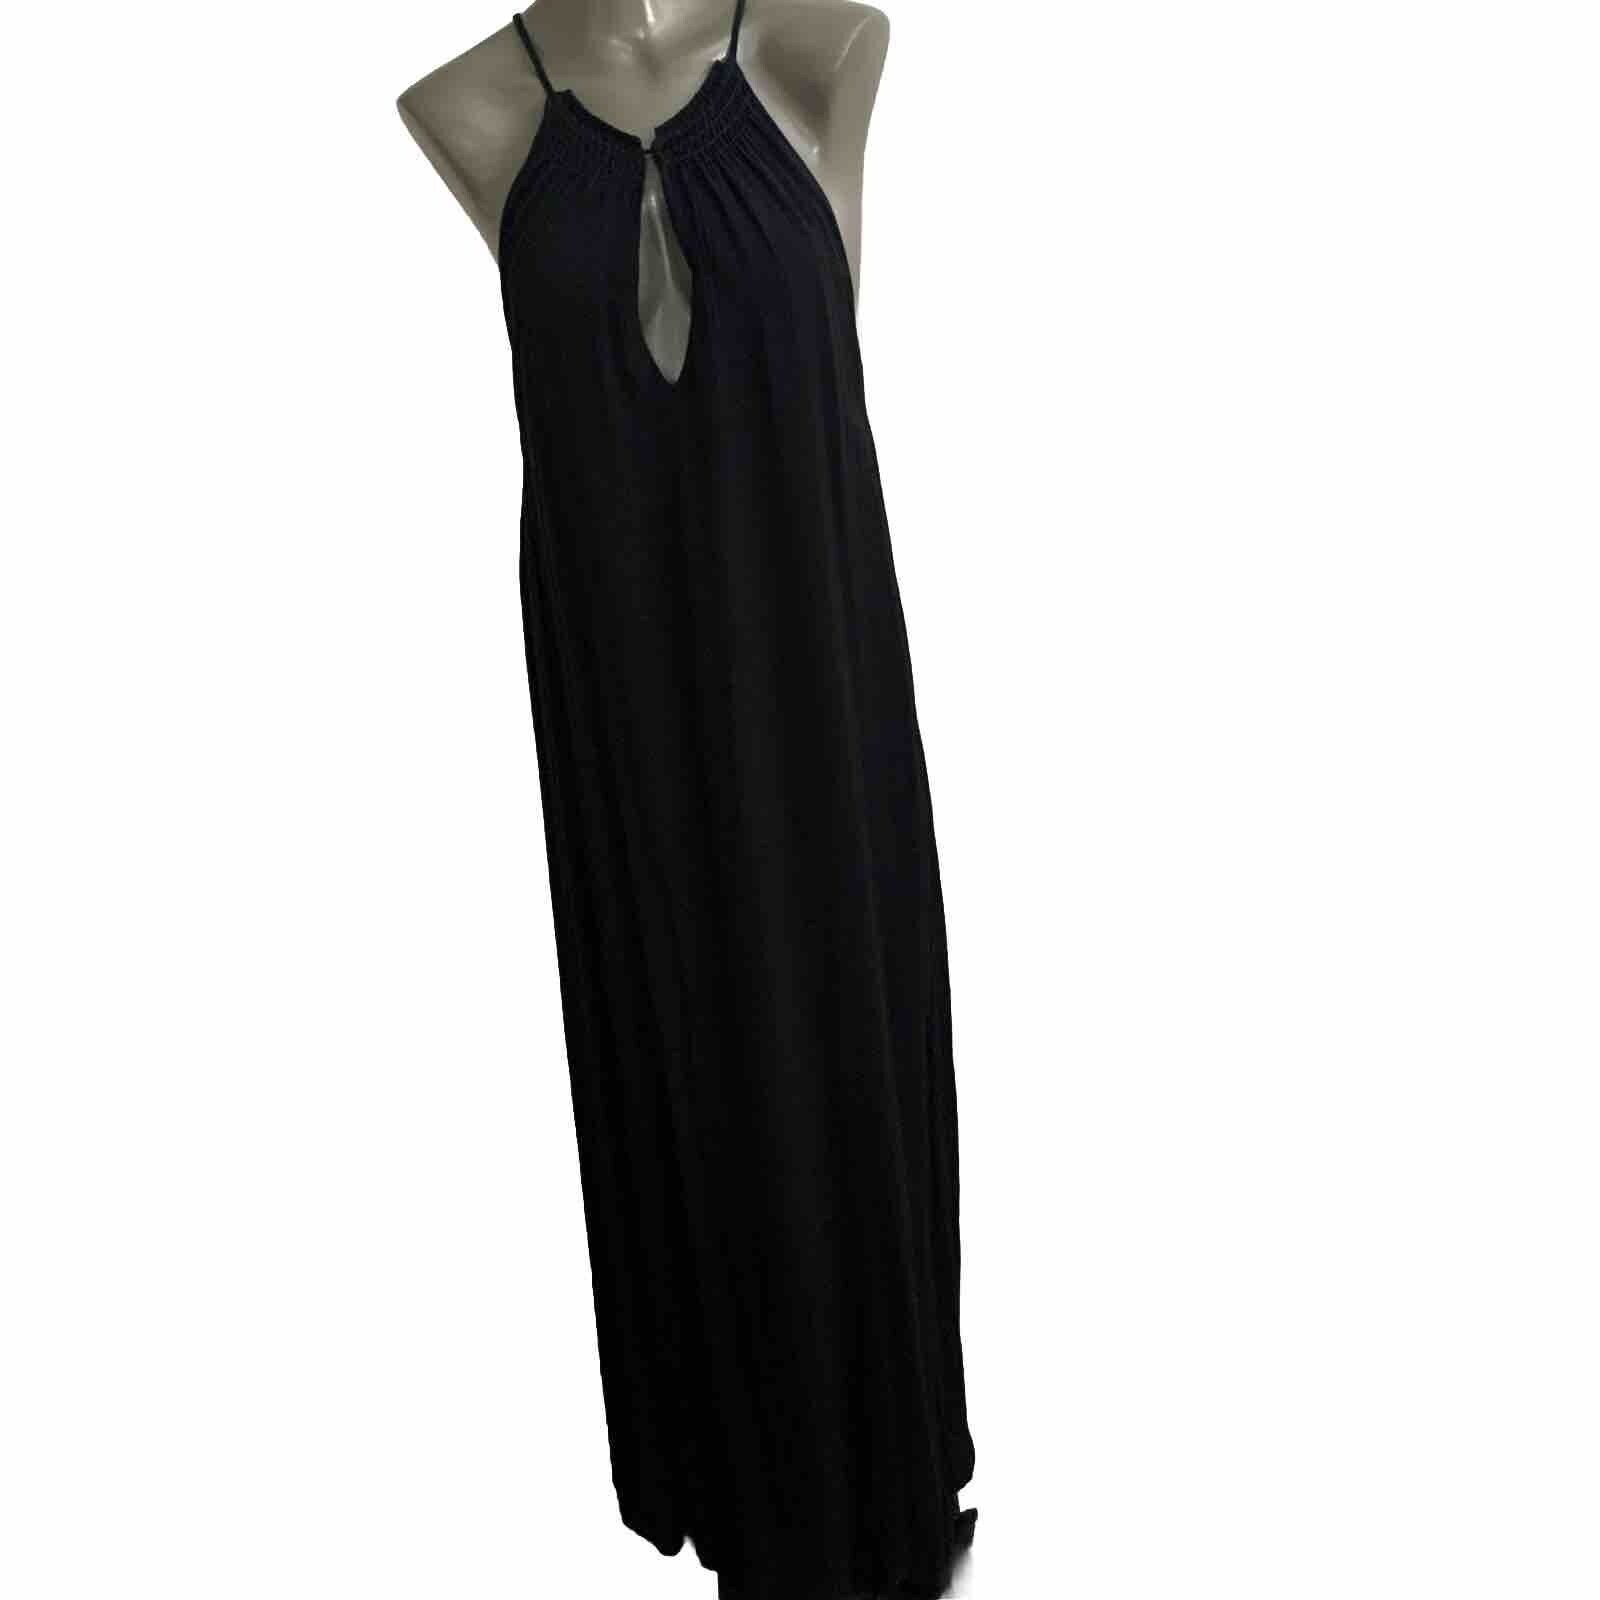 Stillwater Women’s Size Small Maxi Black Dress High Side Slits Beach Dress Halte